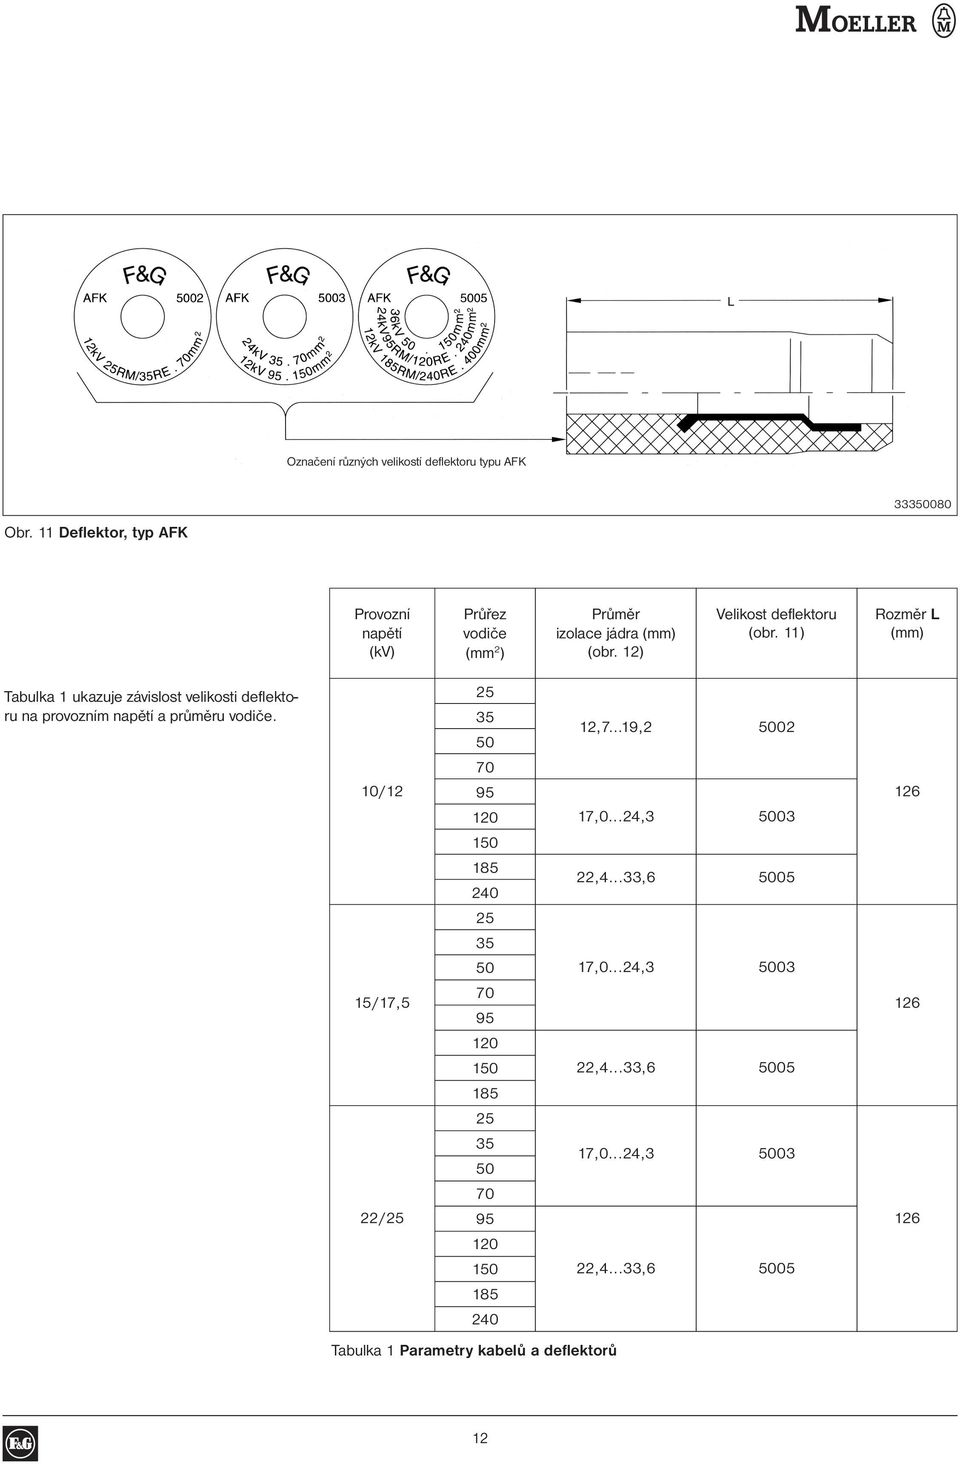 11) Rozměr L (mm) Tabulka 1 ukazuje závislost velikosti deflektoru na provozním napětí a průměru vodiče.